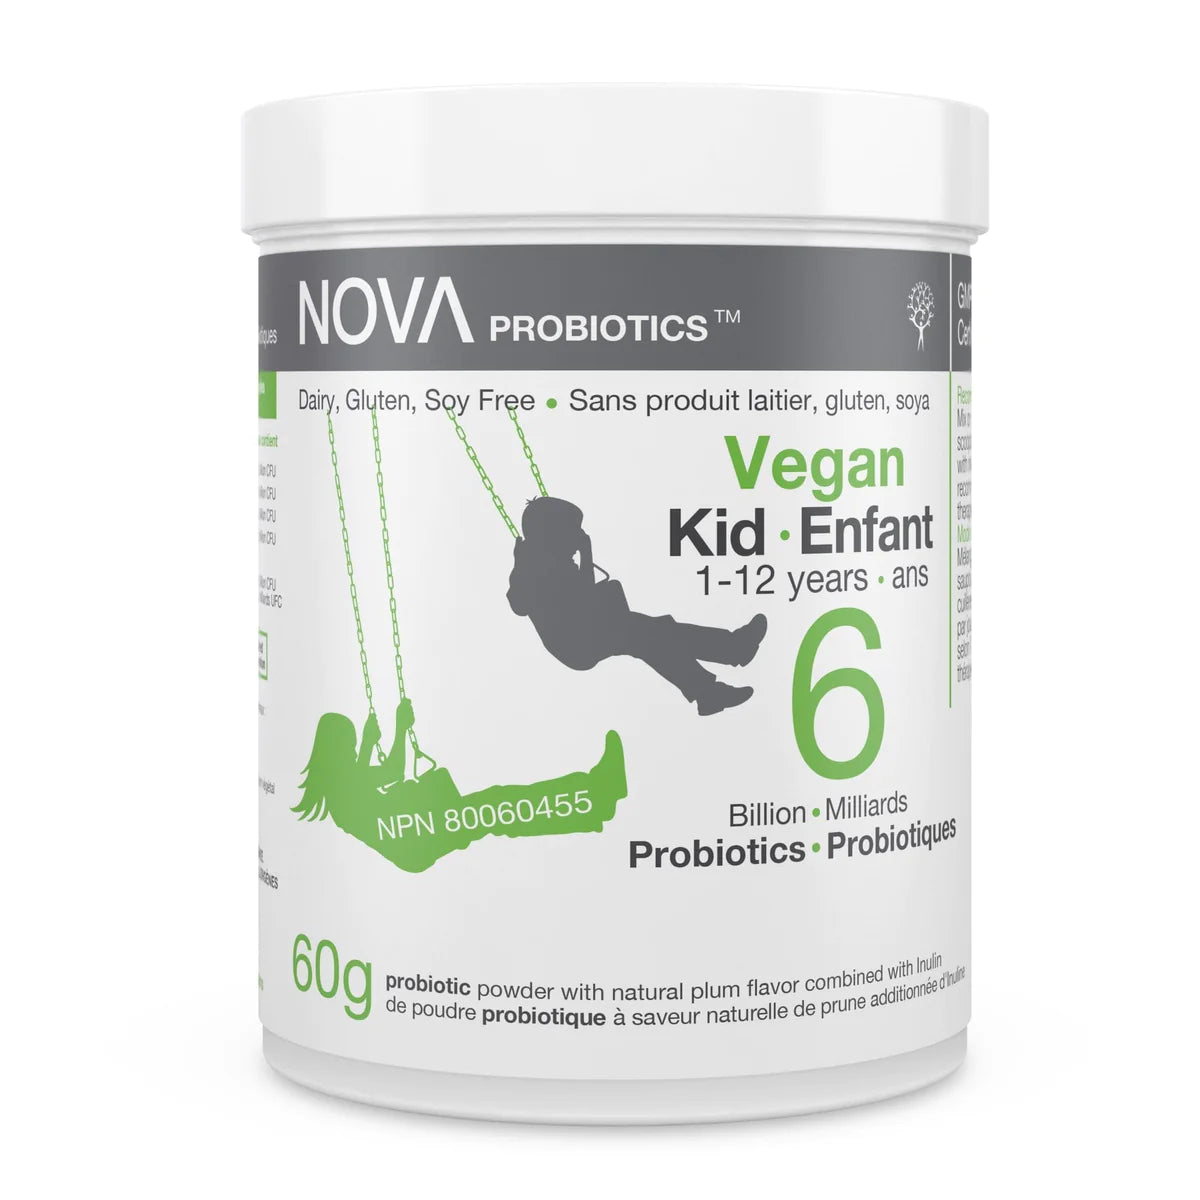 Vegan probiotics Kid 1 to 12 (6 milliards probiotiques) by Nova, 60g